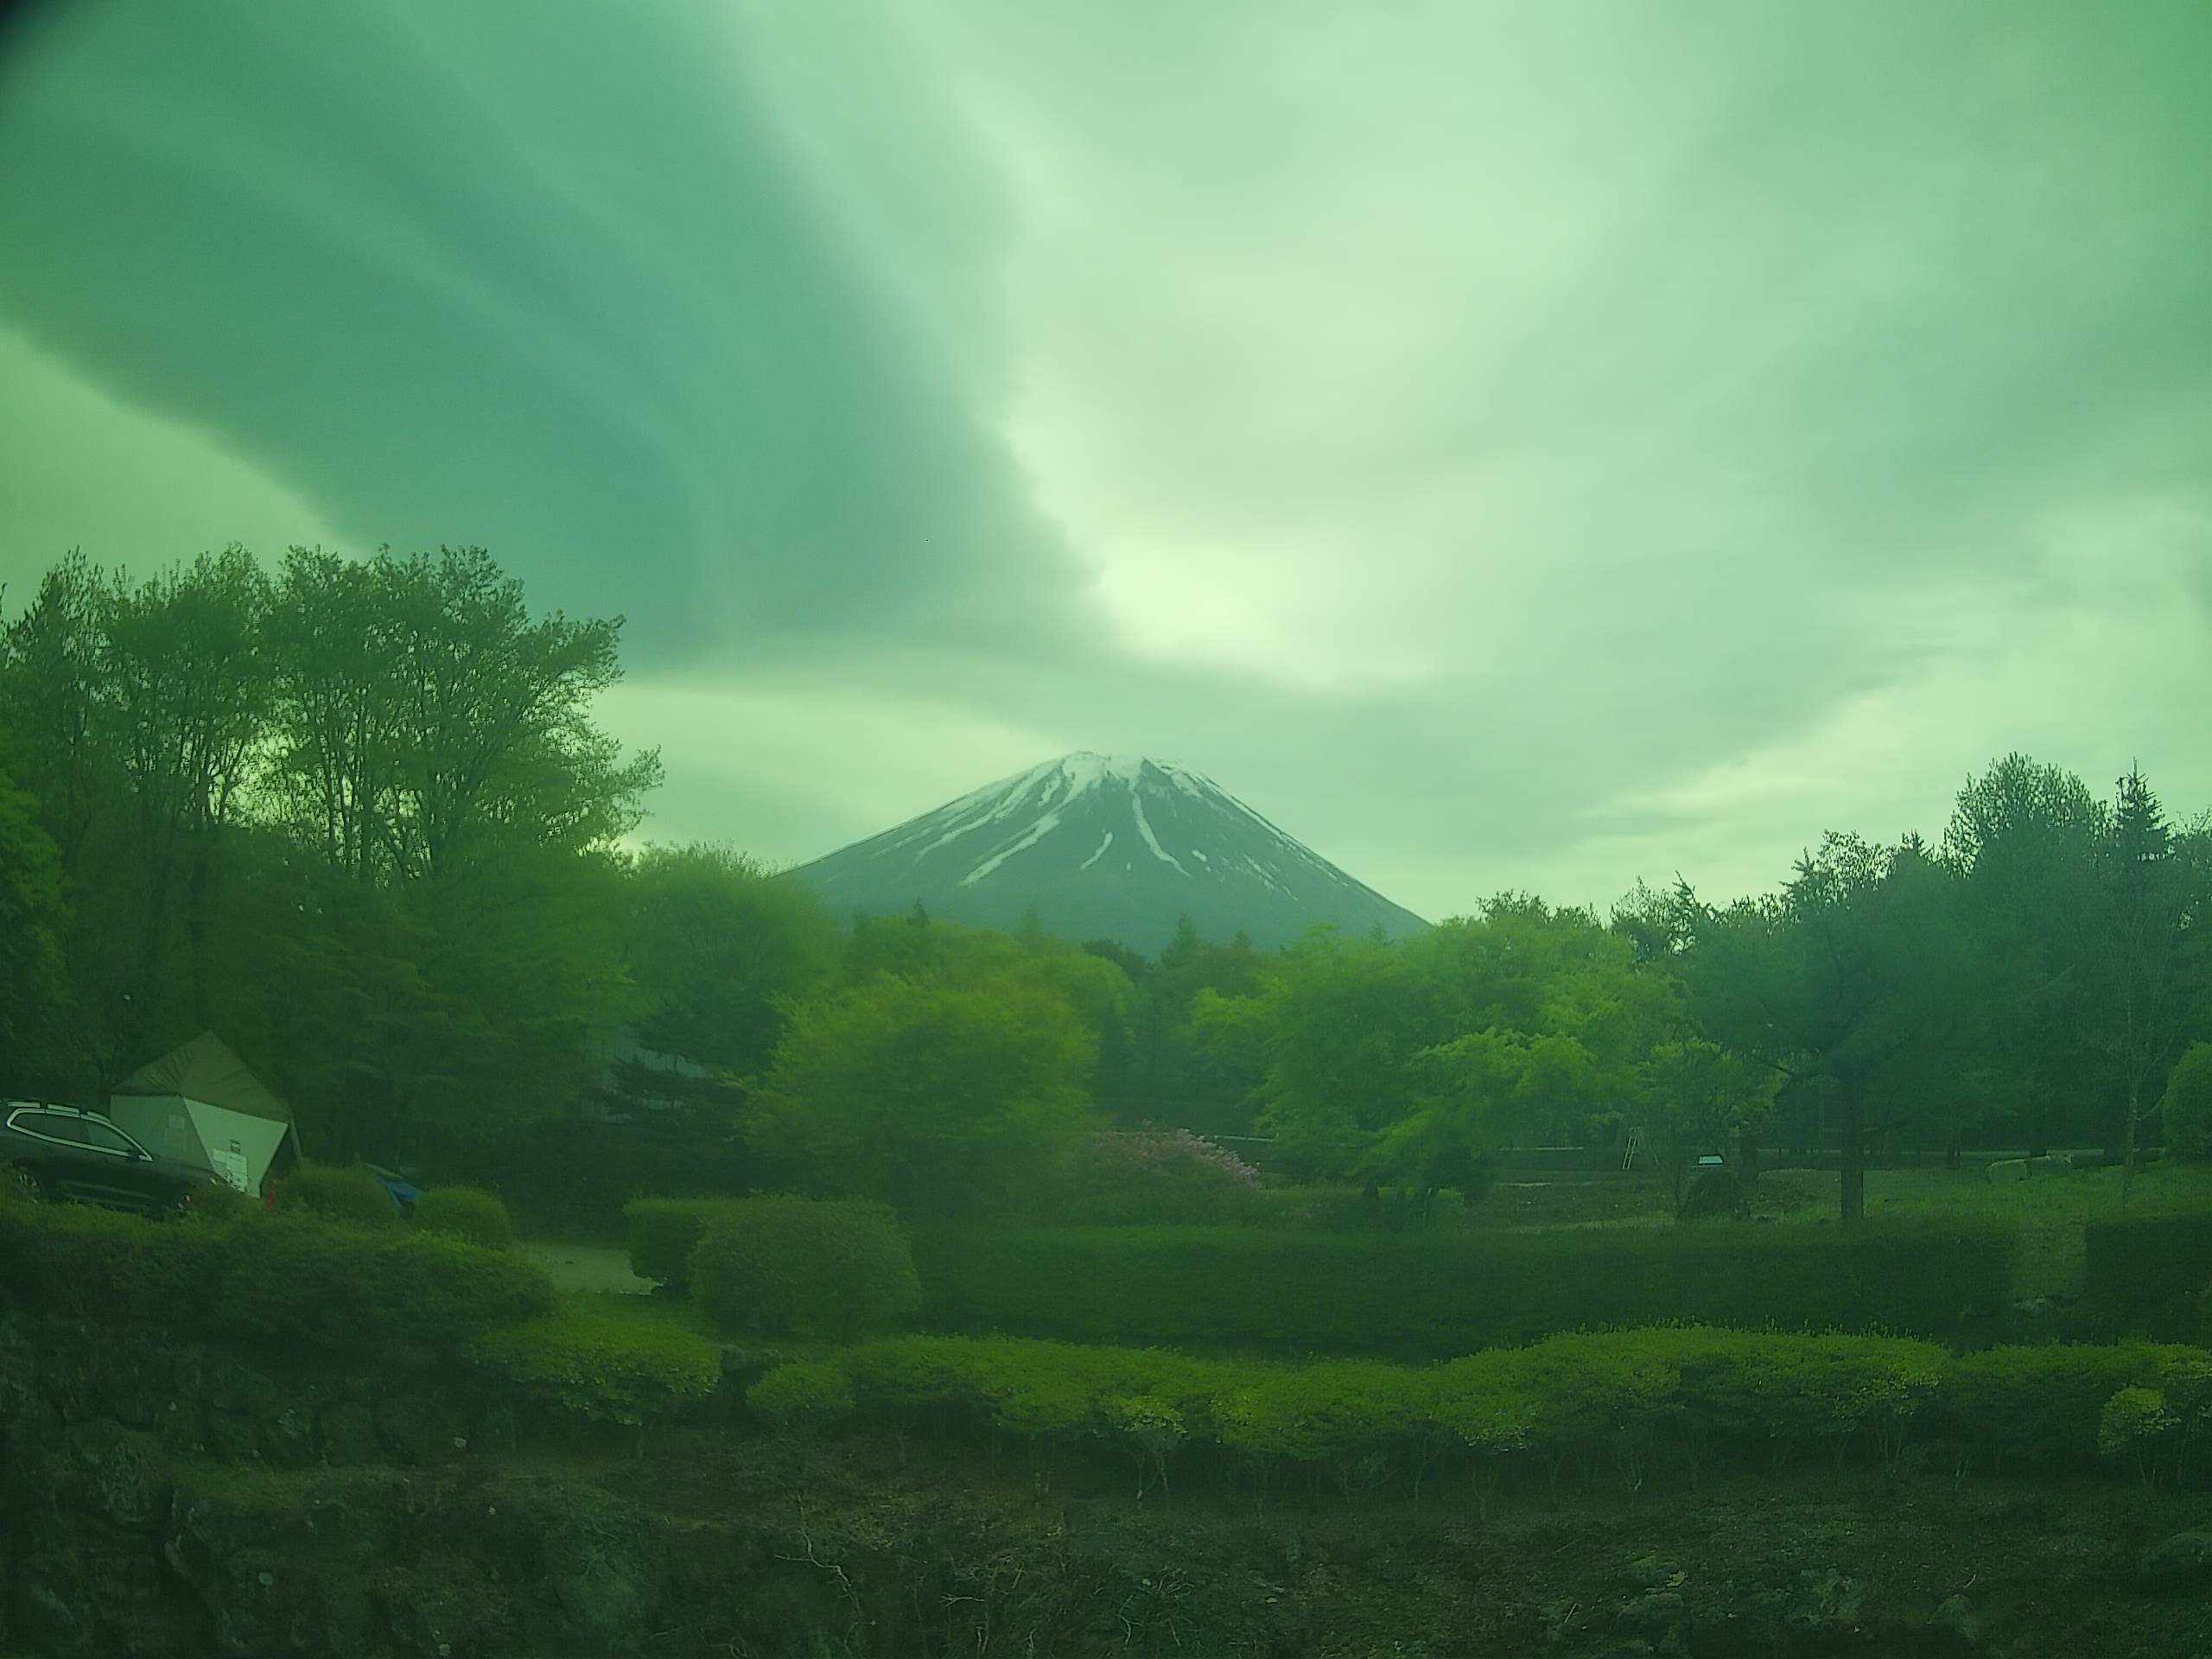 富士山ライブカメラ-富士ヶ嶺高原富士ドクタービレッジ